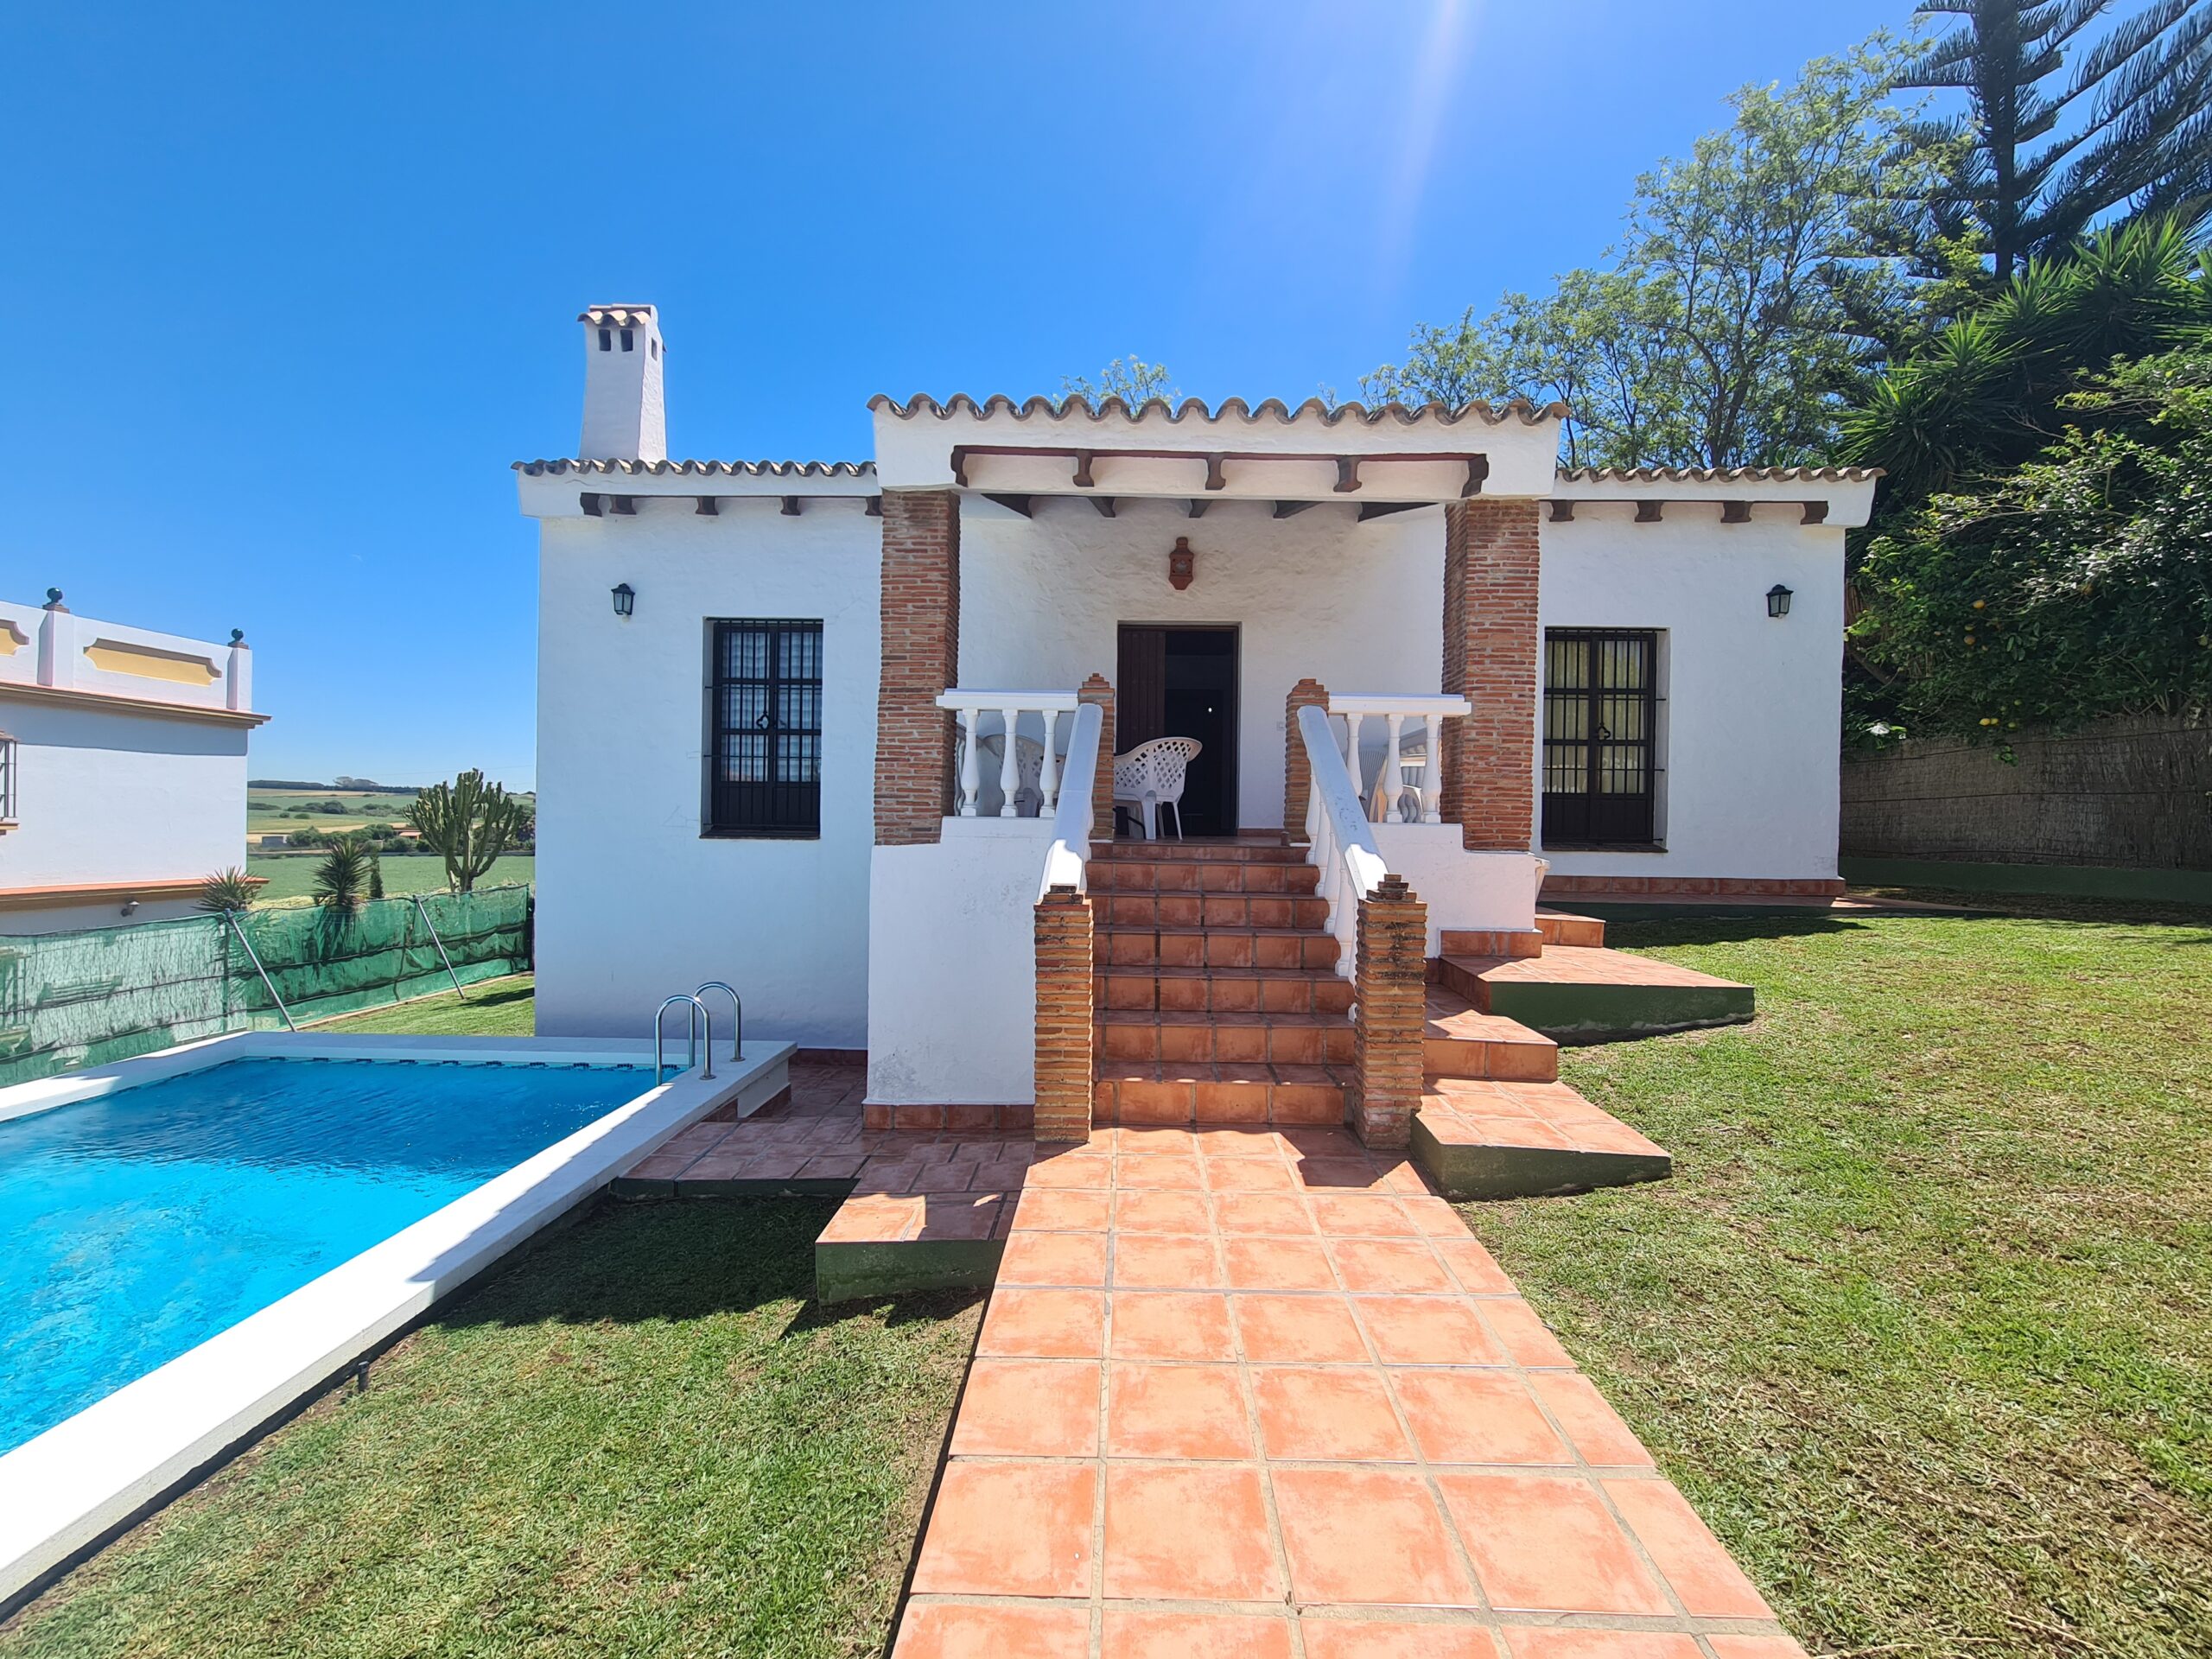 Casa Correa | Casa con piscina a 500 mts de la playa.